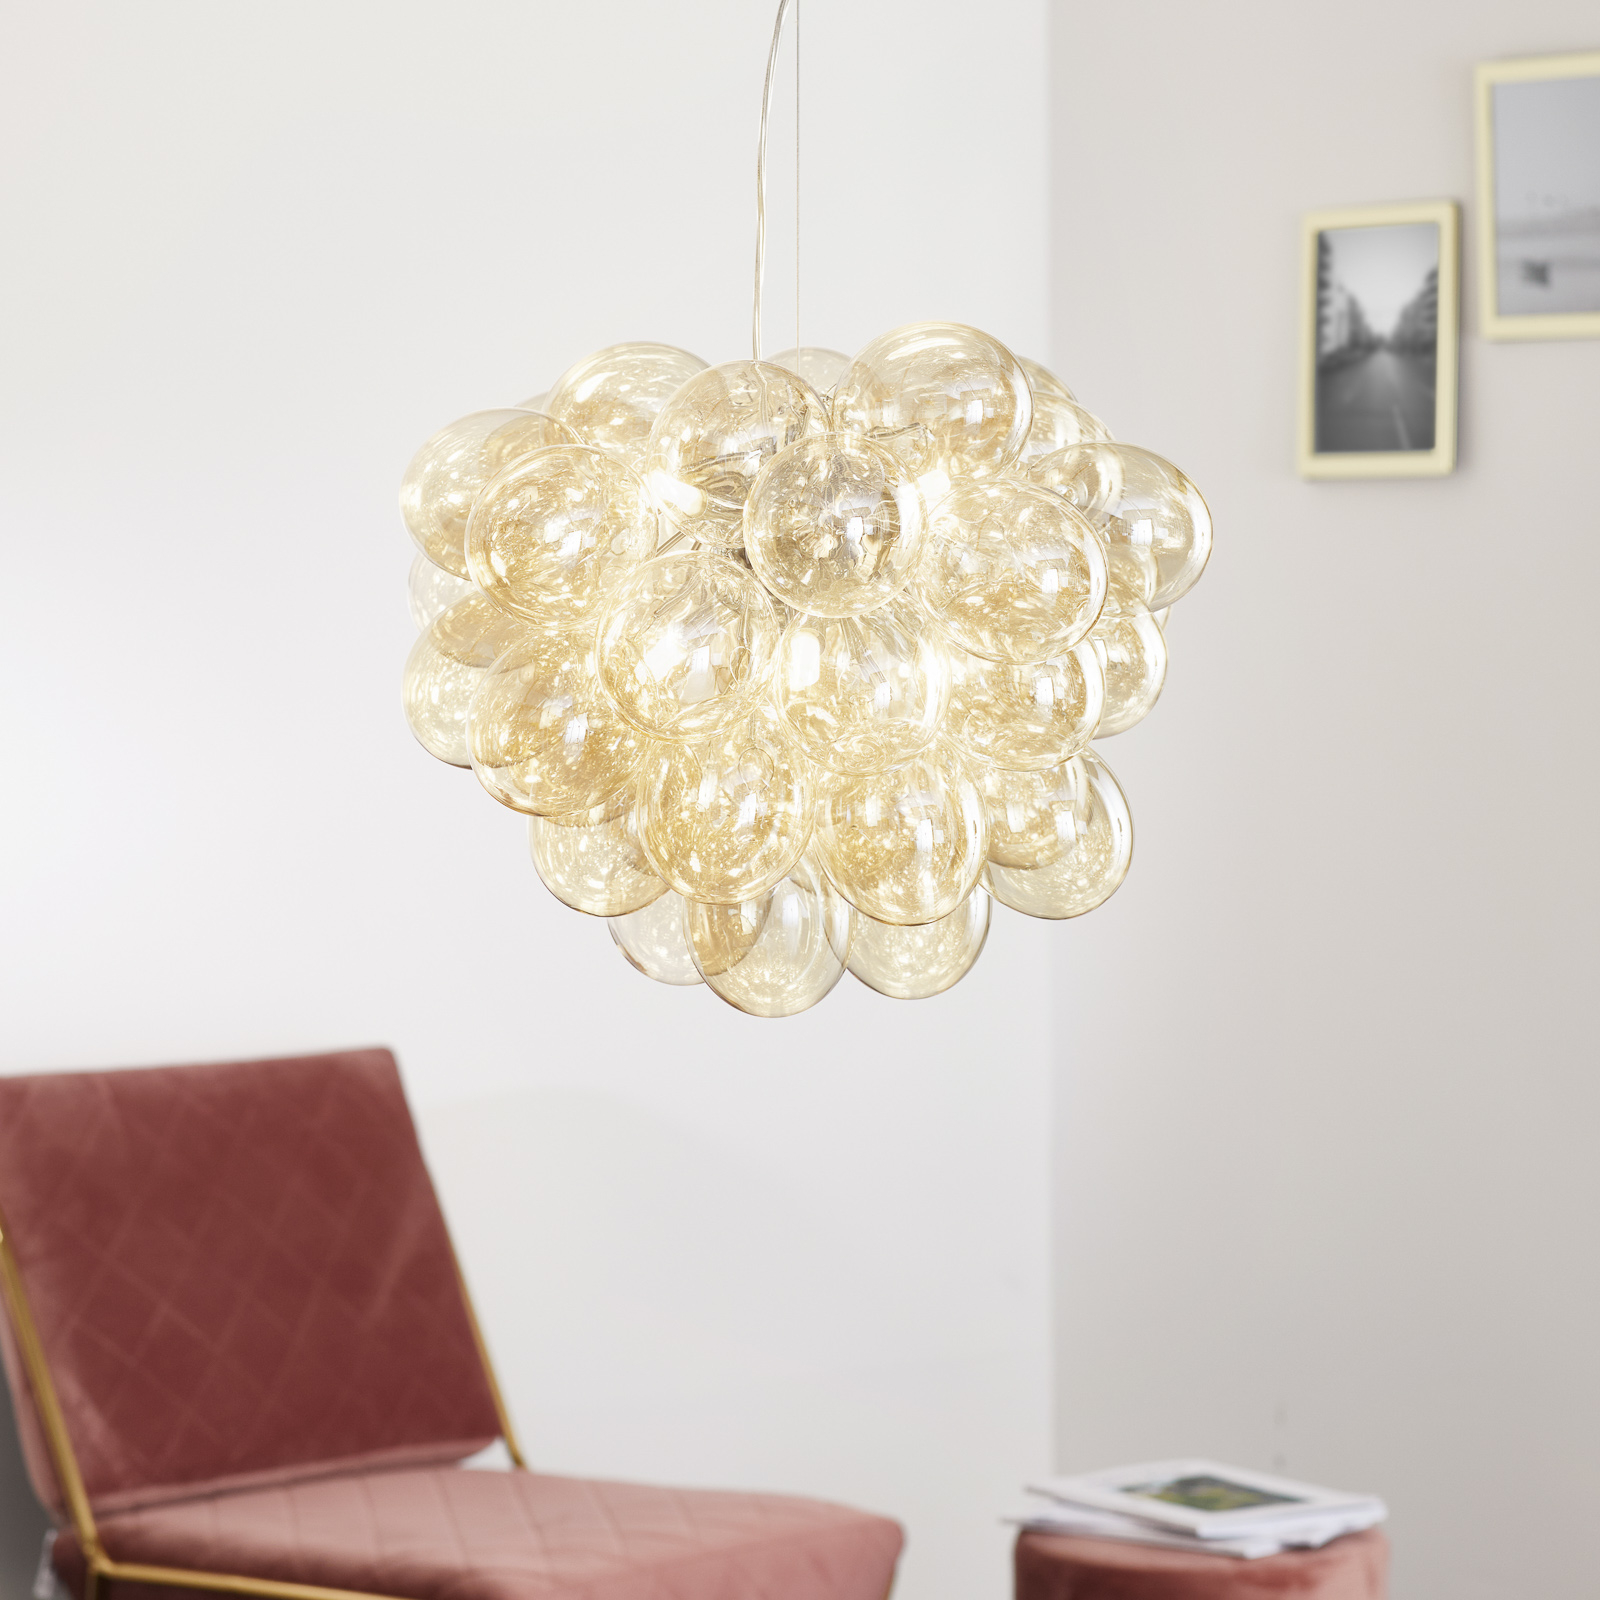 By Rydéns Gross hanglamp, 50 cm, barnsteen